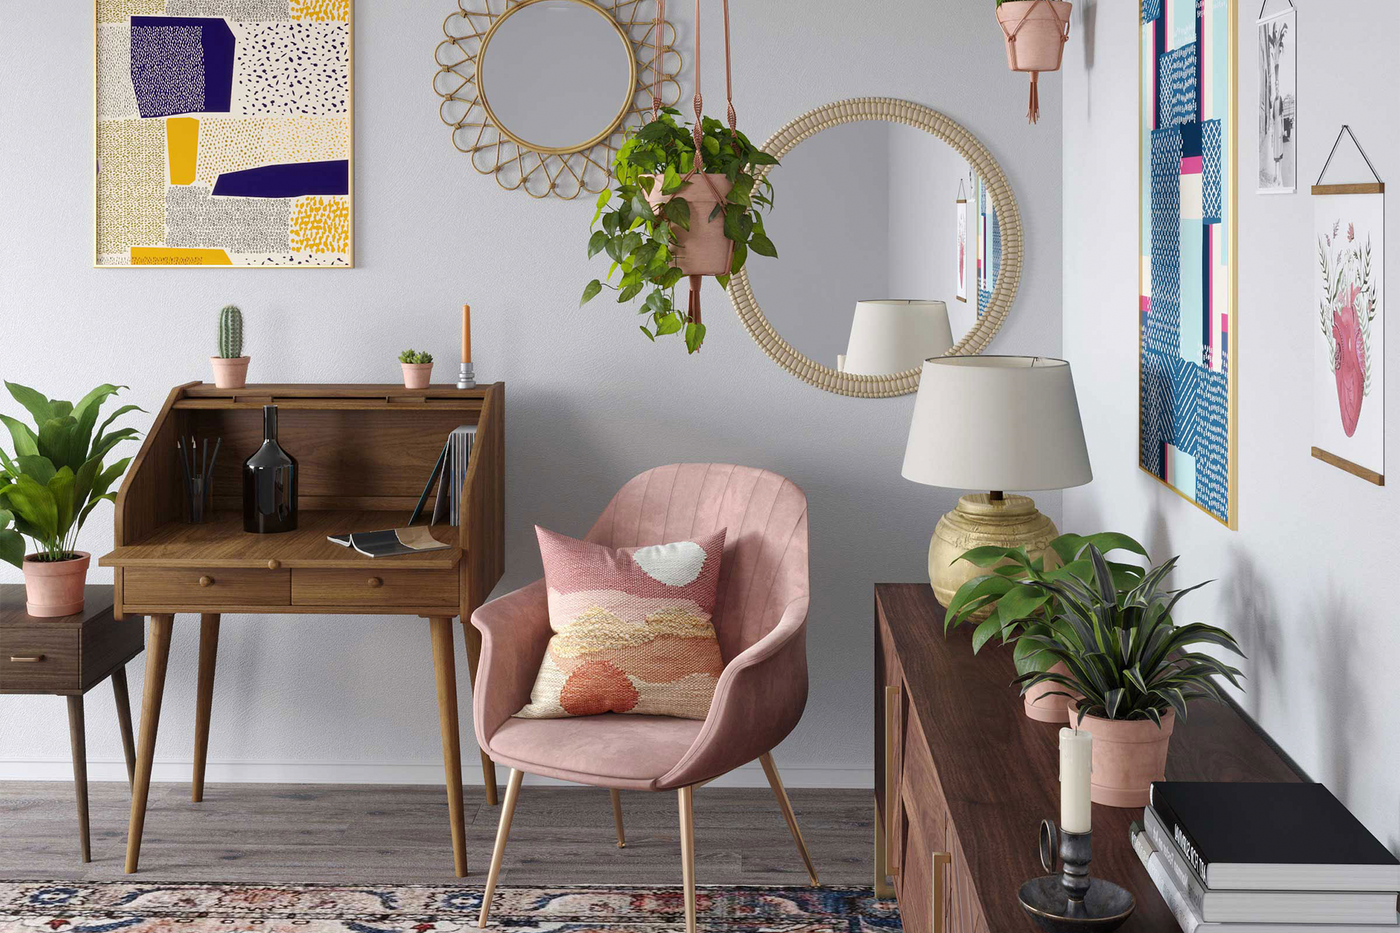 アンティーク調家具とピンクのベストマッチングを表現したスペース